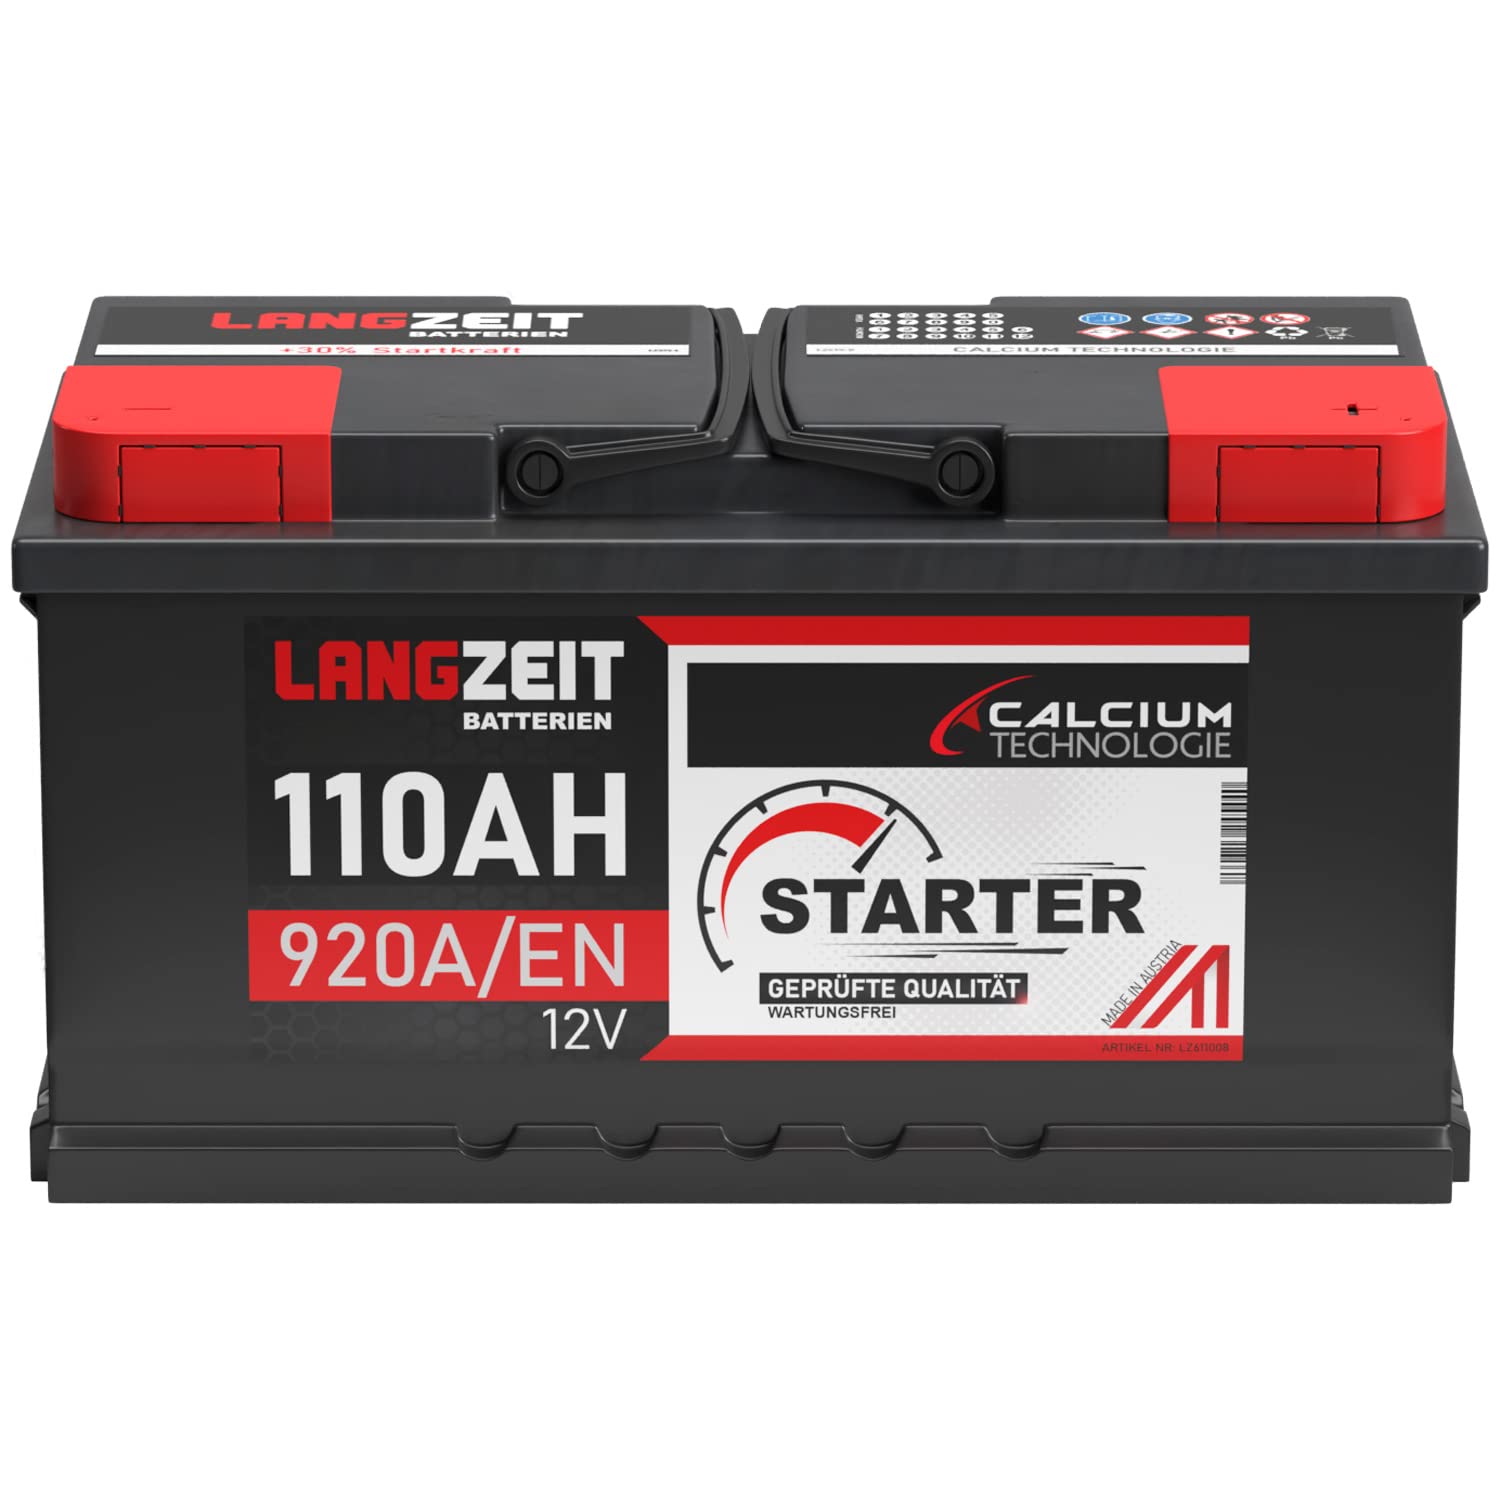 LANGZEIT Autobatterie 110AH 12V 920A/EN Starterbatterie +30% mehr Leistung ersetzt Batterie 100Ah 105Ah, kompatible mit PKW, lead acid von LANGZEIT Batterien